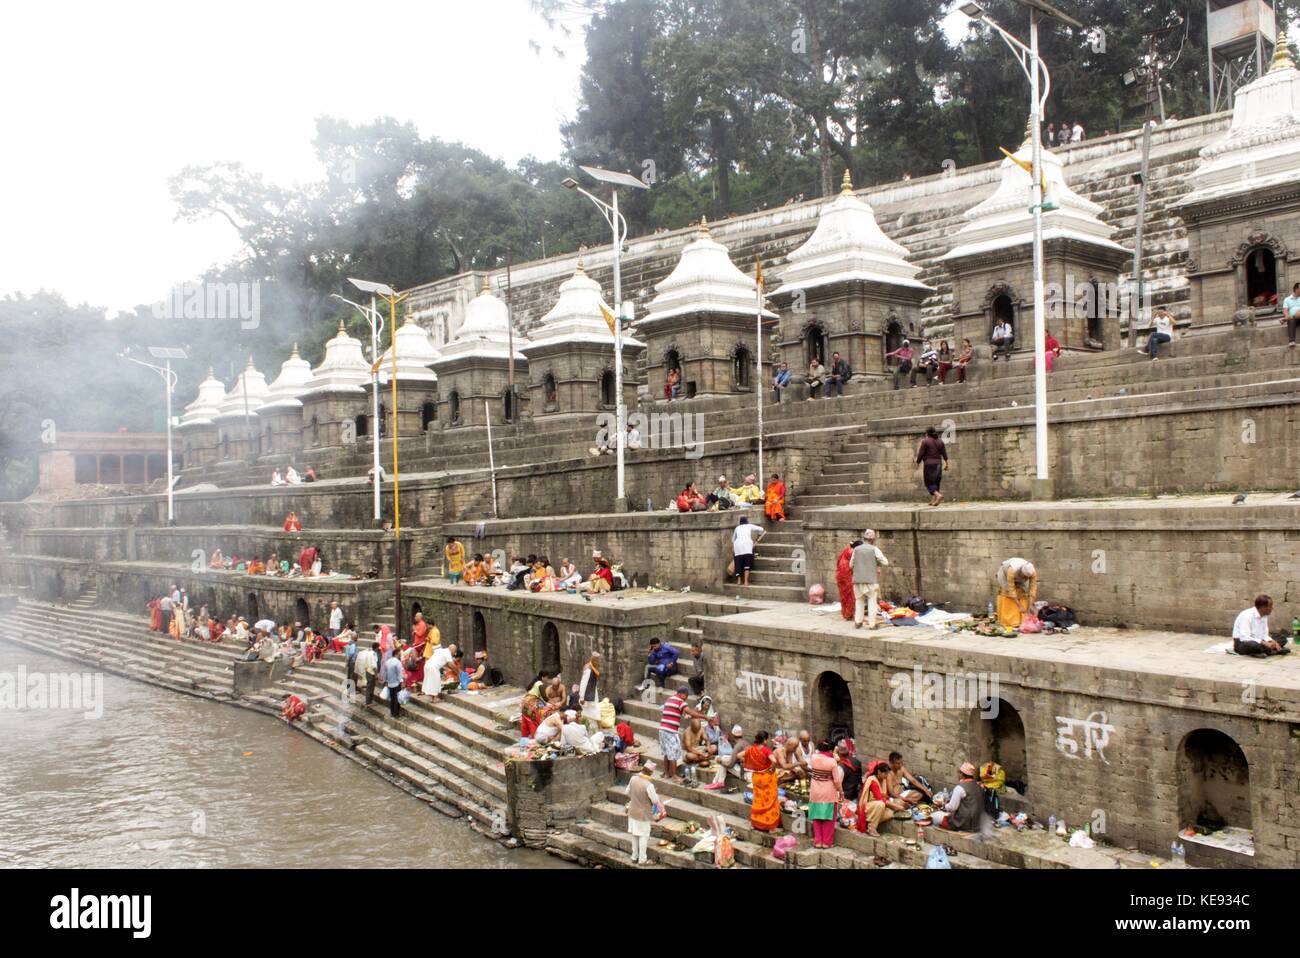 Noemie repetto/le pictorium - Nepal - kathmandu Pashupatinath Tempel. Welterbe seit 1979. - 20/09/2017 - Nepal/Kathmandu/Kathmandu - Nepal - Kathmandu. Der Tempel von Pashupatinath. Welterbe der Menschheit seit 1979. Die gegenüberliegende Bank zu, dass dort, wo die kremation durchgeführt werden. Familien dort niederlassen Essen und Angebote vorzubereiten, bevor sie in den Fluss schwimmen. Touristen mischen sich mit Familien, die die Zeremonie der seine Intimität beraubt. Diese Seite hat auch 11 weißen Tempeln. Stockfoto